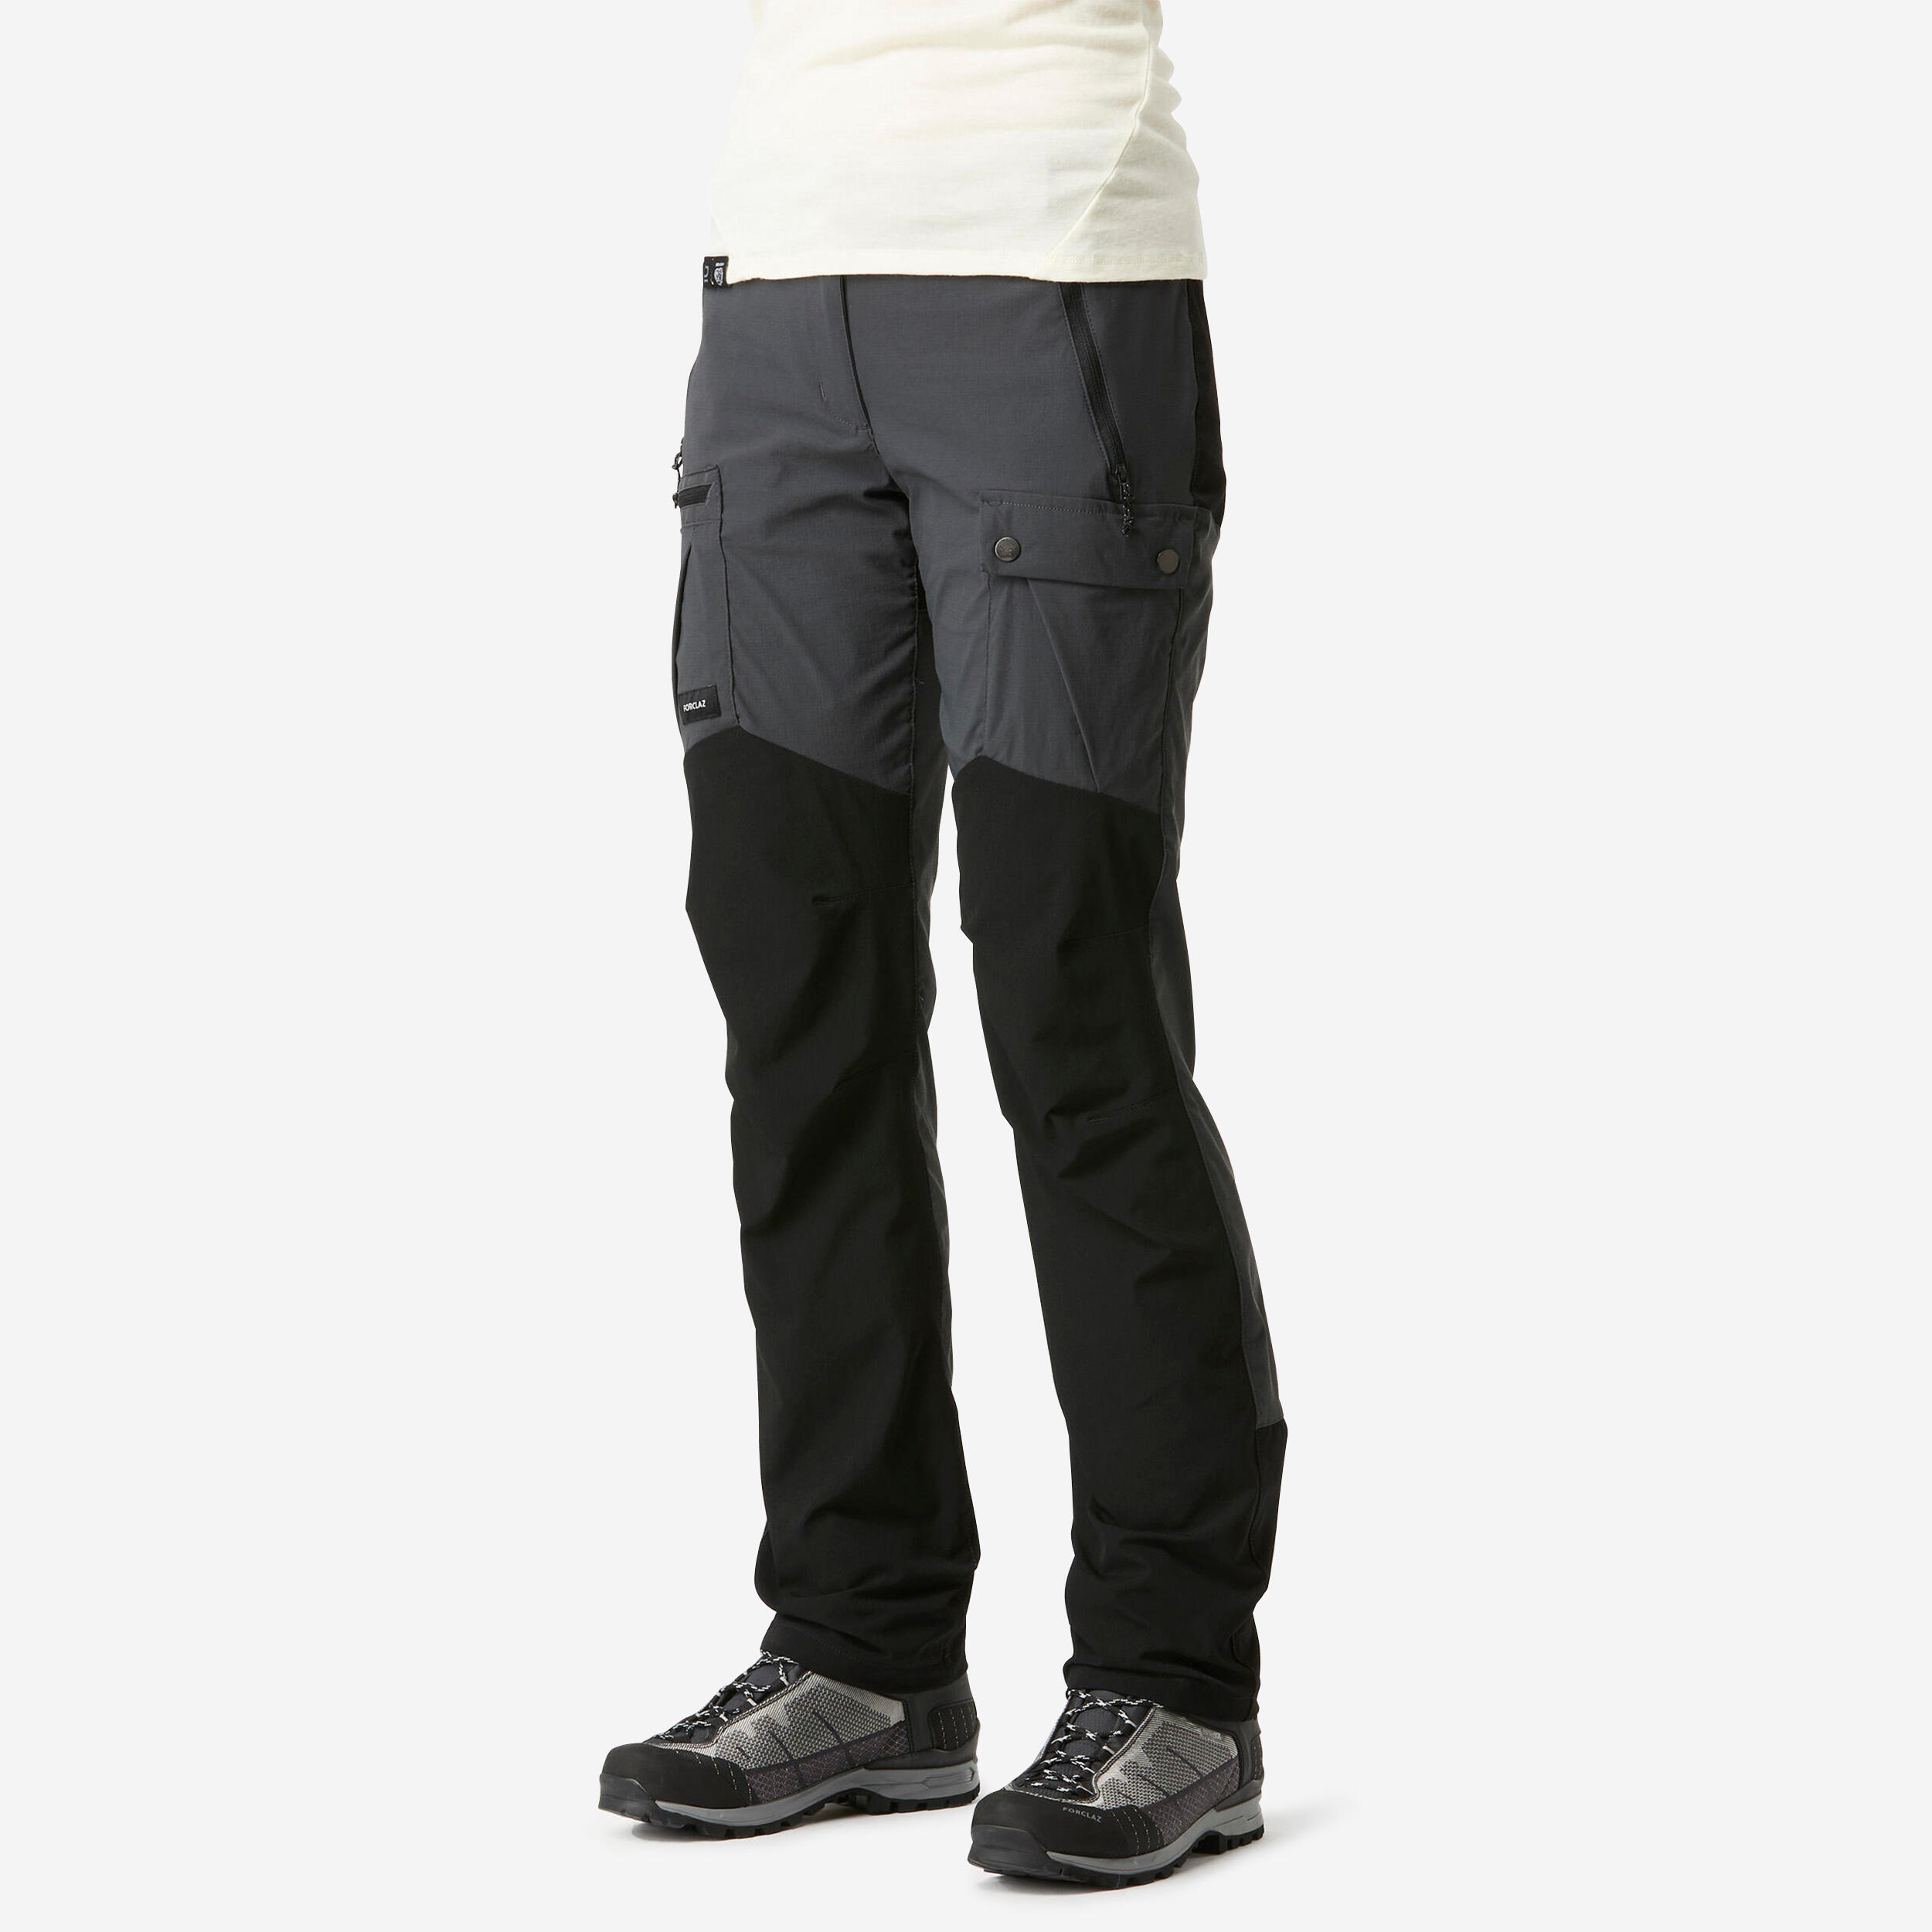 Trekking pants for men – Gokyo Outdoor Clothing & Gear